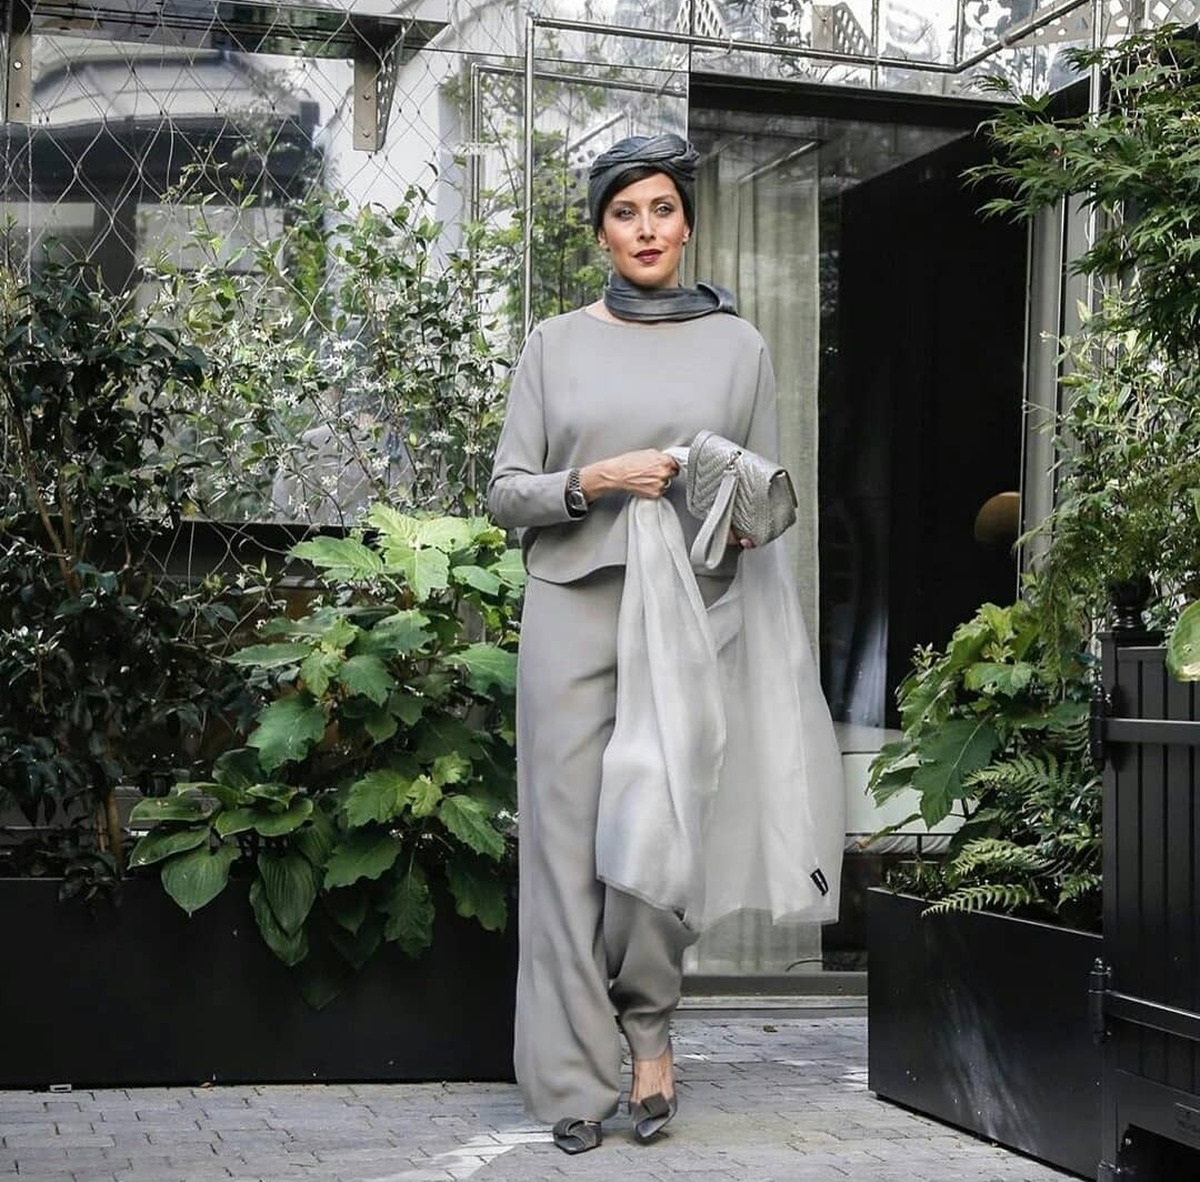 مهتاب کرامتی با لباس طوسی - بازیگران ایرانی مدل